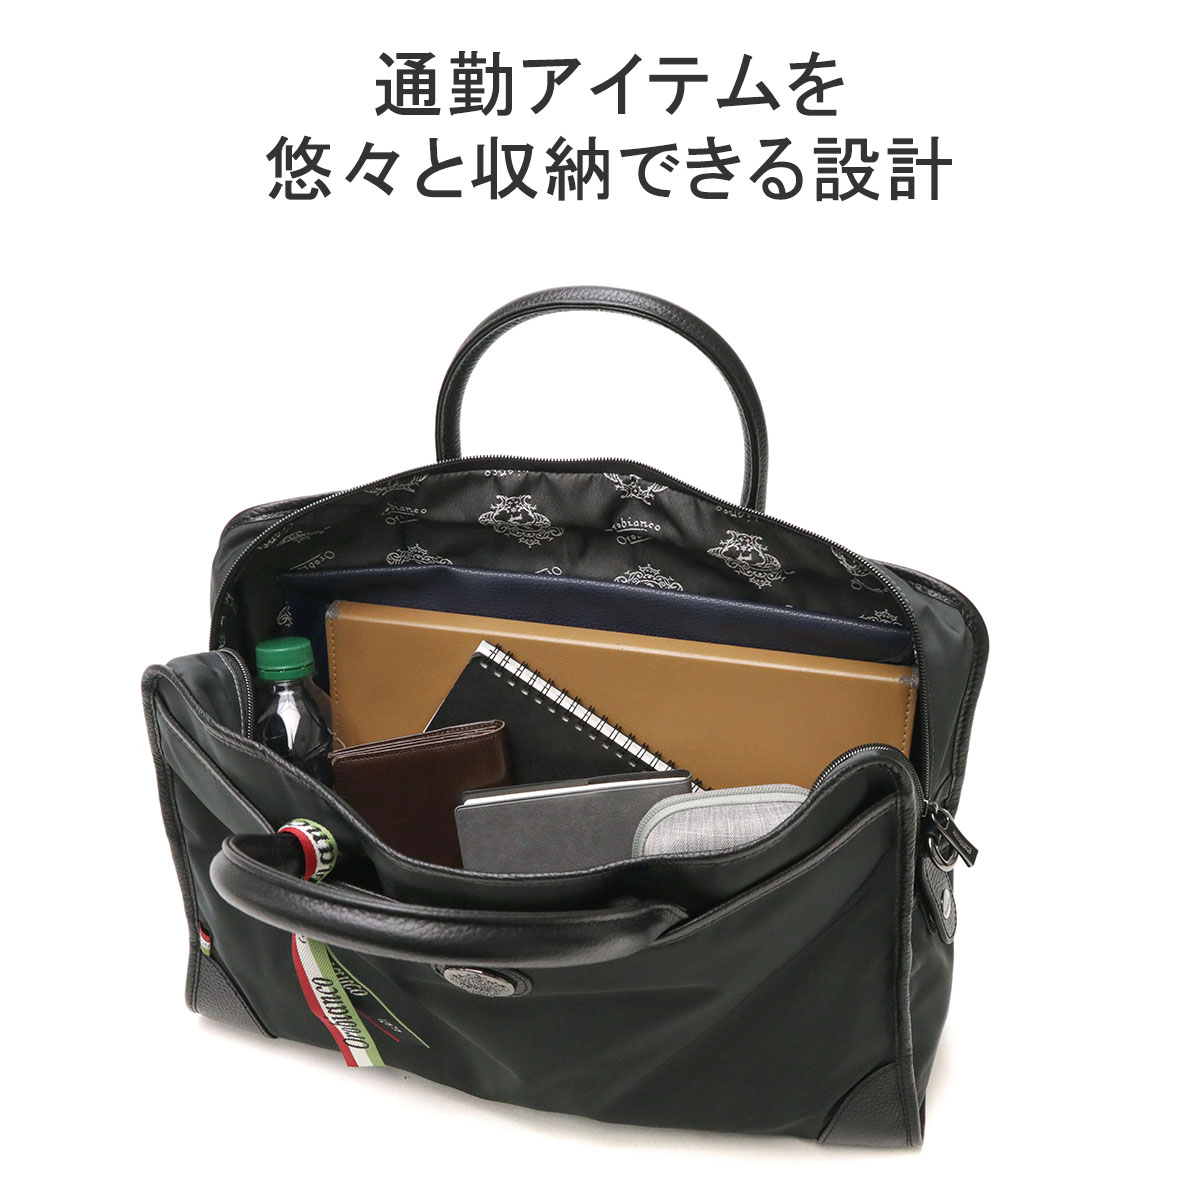 最大36%☆4/9限定 日本正規品 オロビアンコ ビジネスバッグ